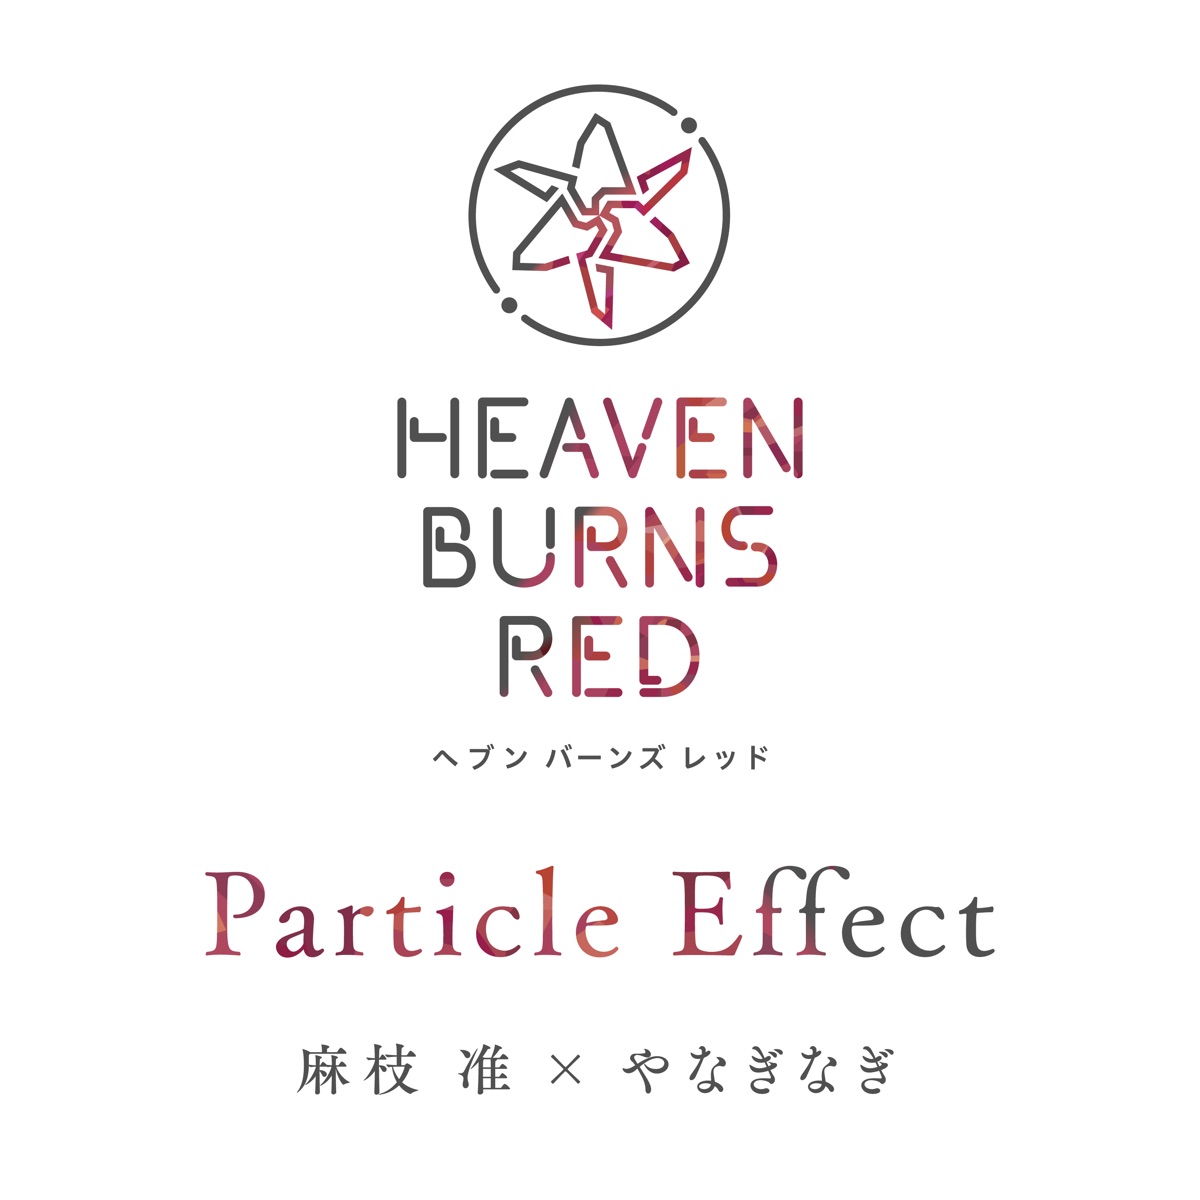 『麻枝准×やなぎなぎ - Particle Effect 歌詞』収録の『Particle Effect』ジャケット